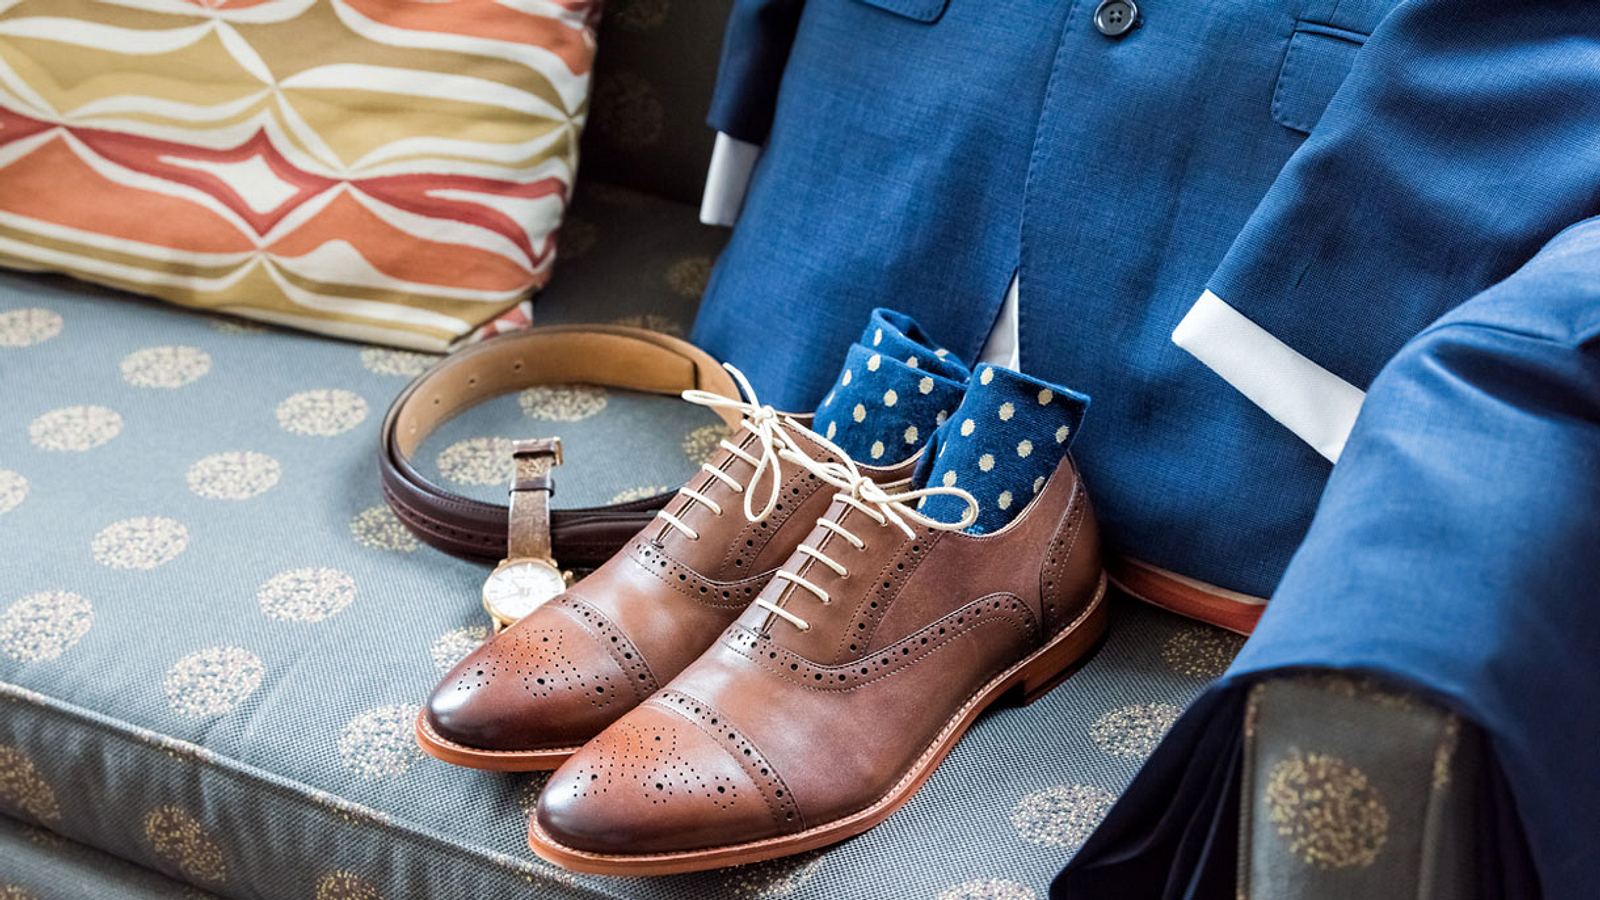 Dresscode Die Passenden Socken Zu Schuhen Und Anzug Mannersache